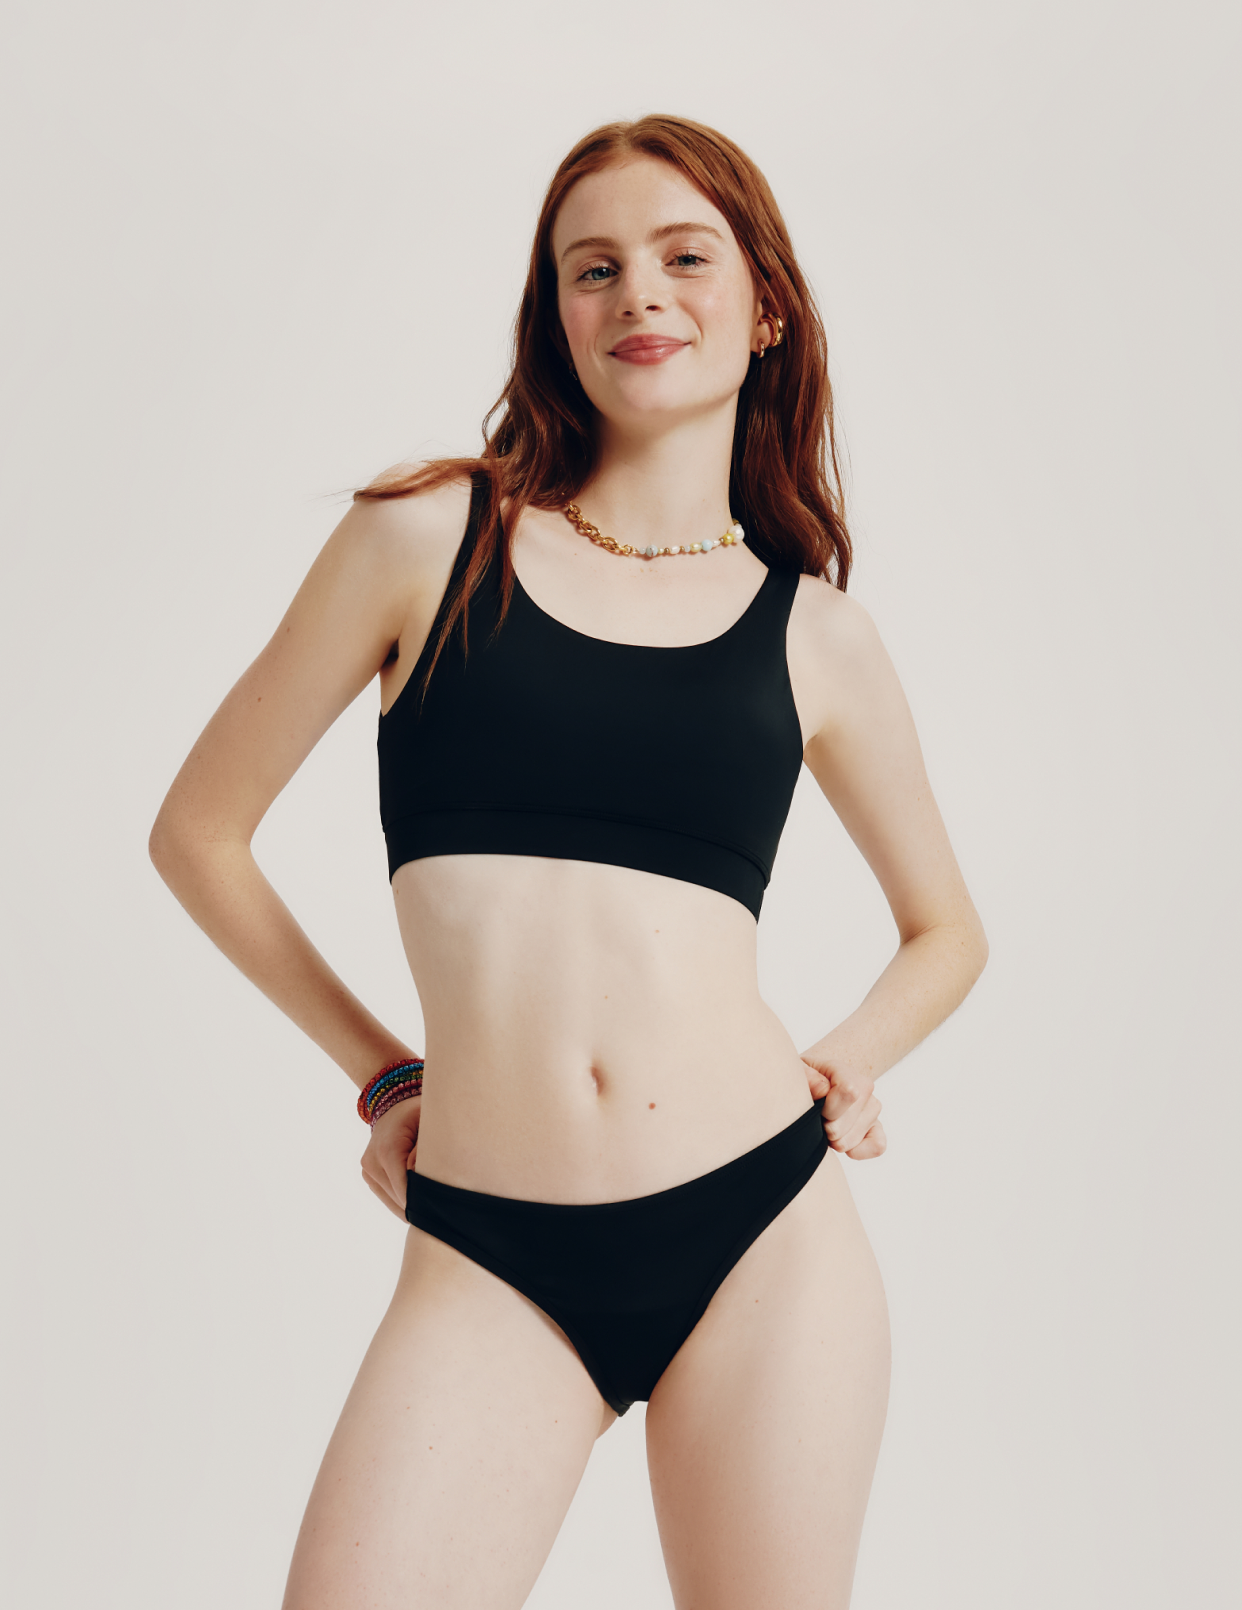 Teen Double Scoop Bikini Top, Period Swimwear for Teens